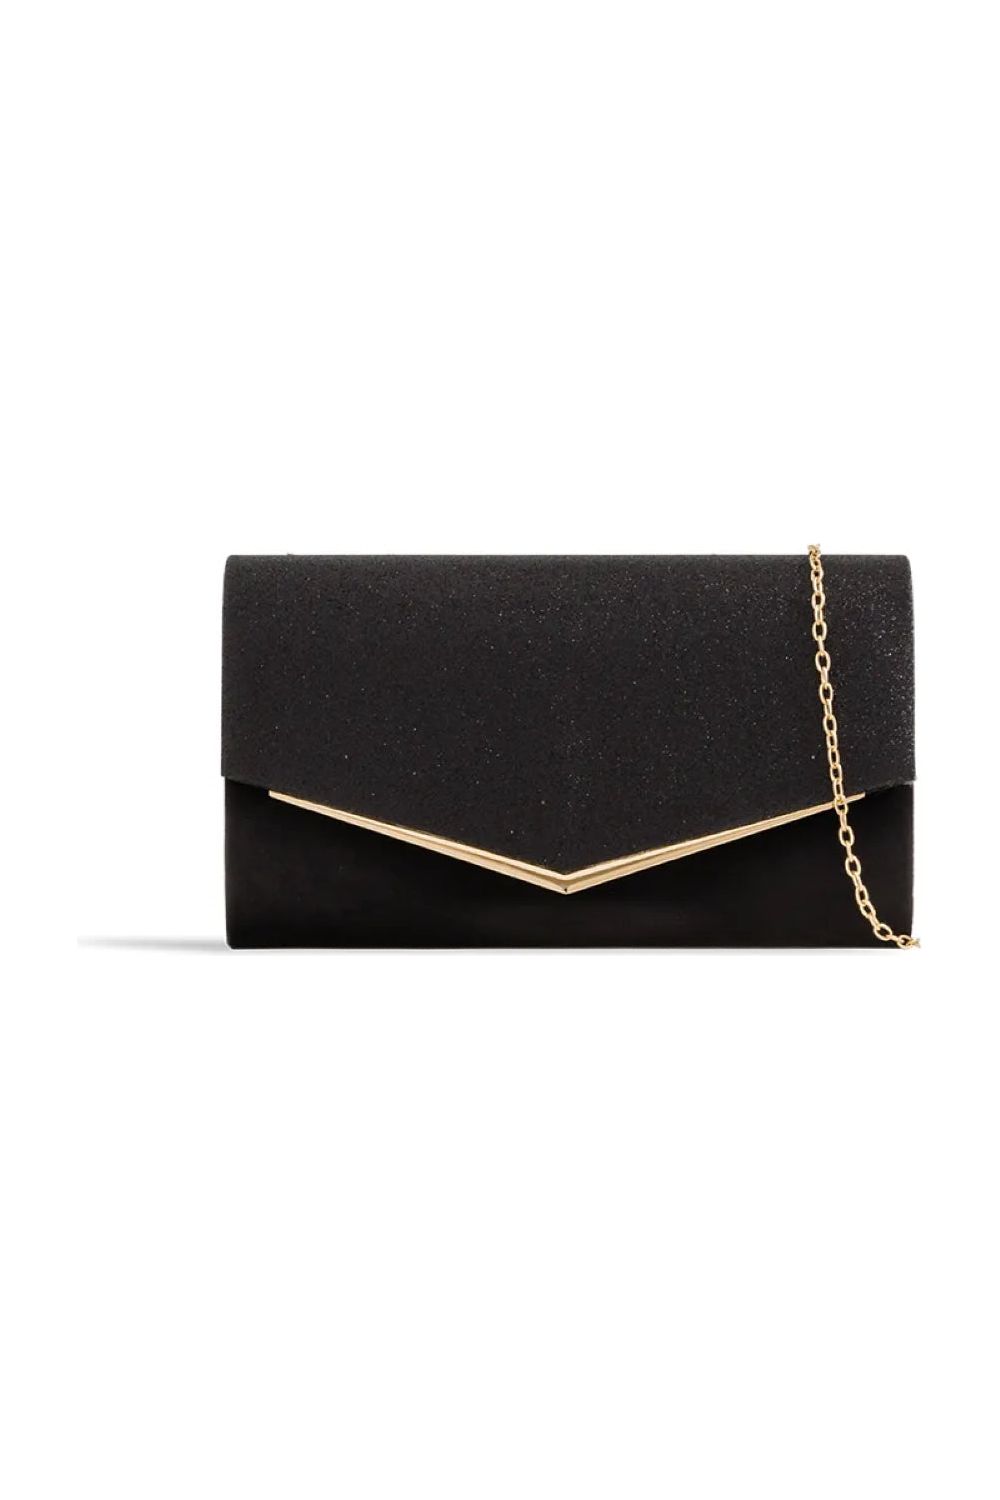 Black Glitter Envelope Clutch Bag ALH2348